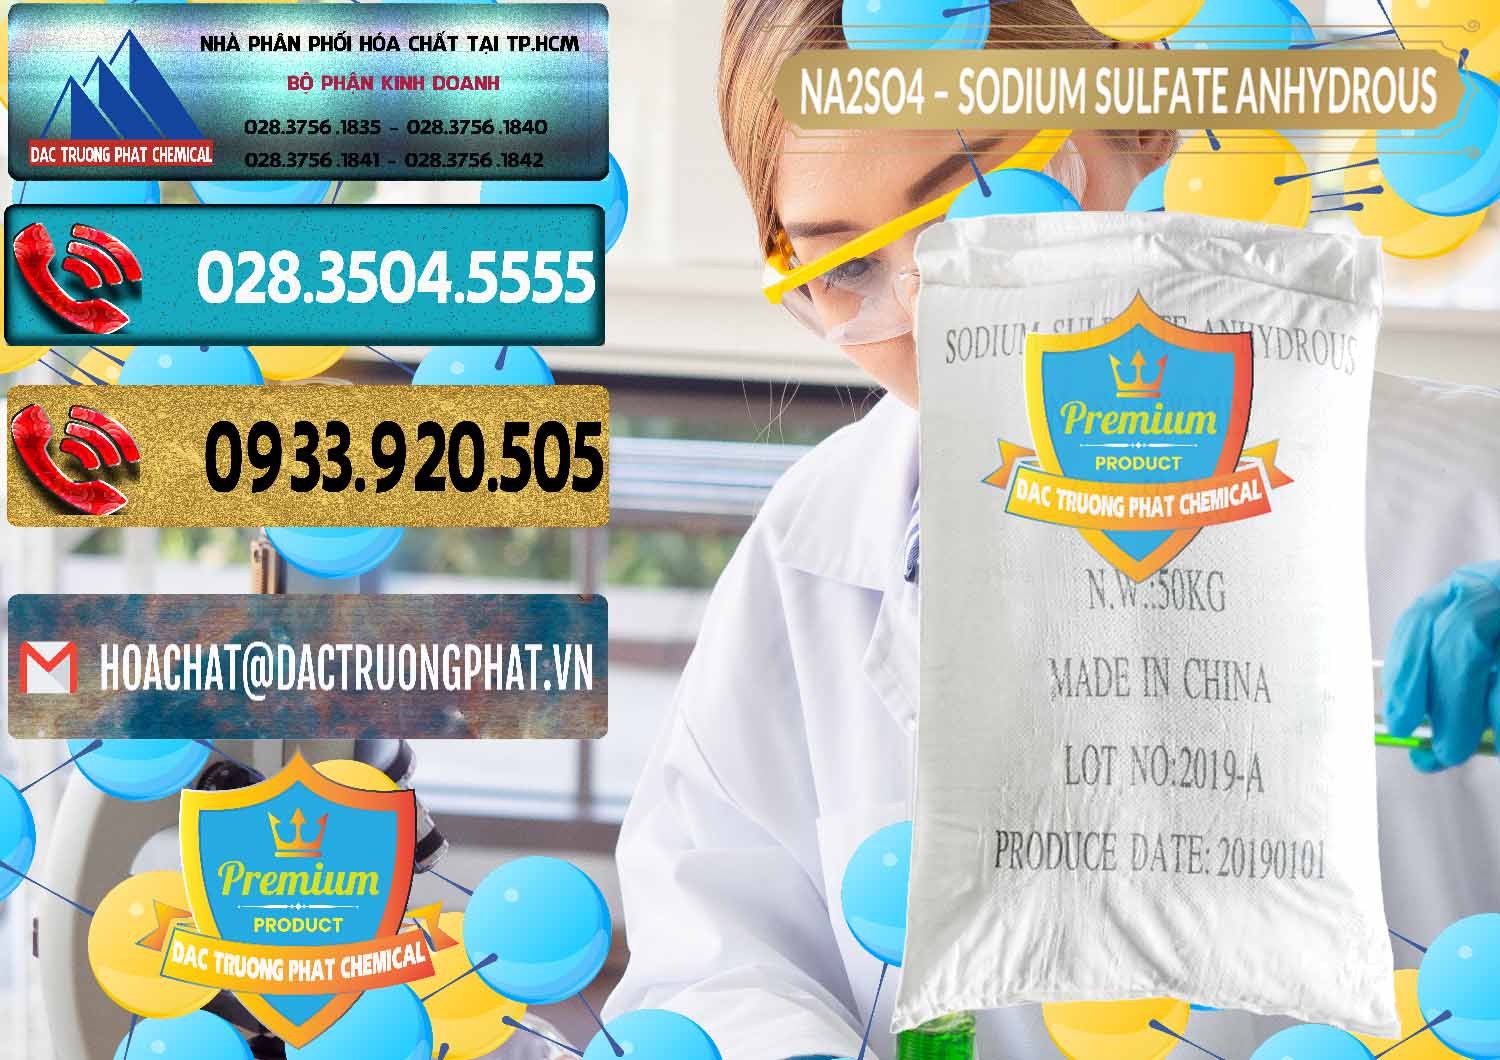 Nơi chuyên bán _ cung cấp Sodium Sulphate - Muối Sunfat Na2SO4 PH 6-8 Trung Quốc China - 0099 - Chuyên kinh doanh & phân phối hóa chất tại TP.HCM - hoachatdetnhuom.com